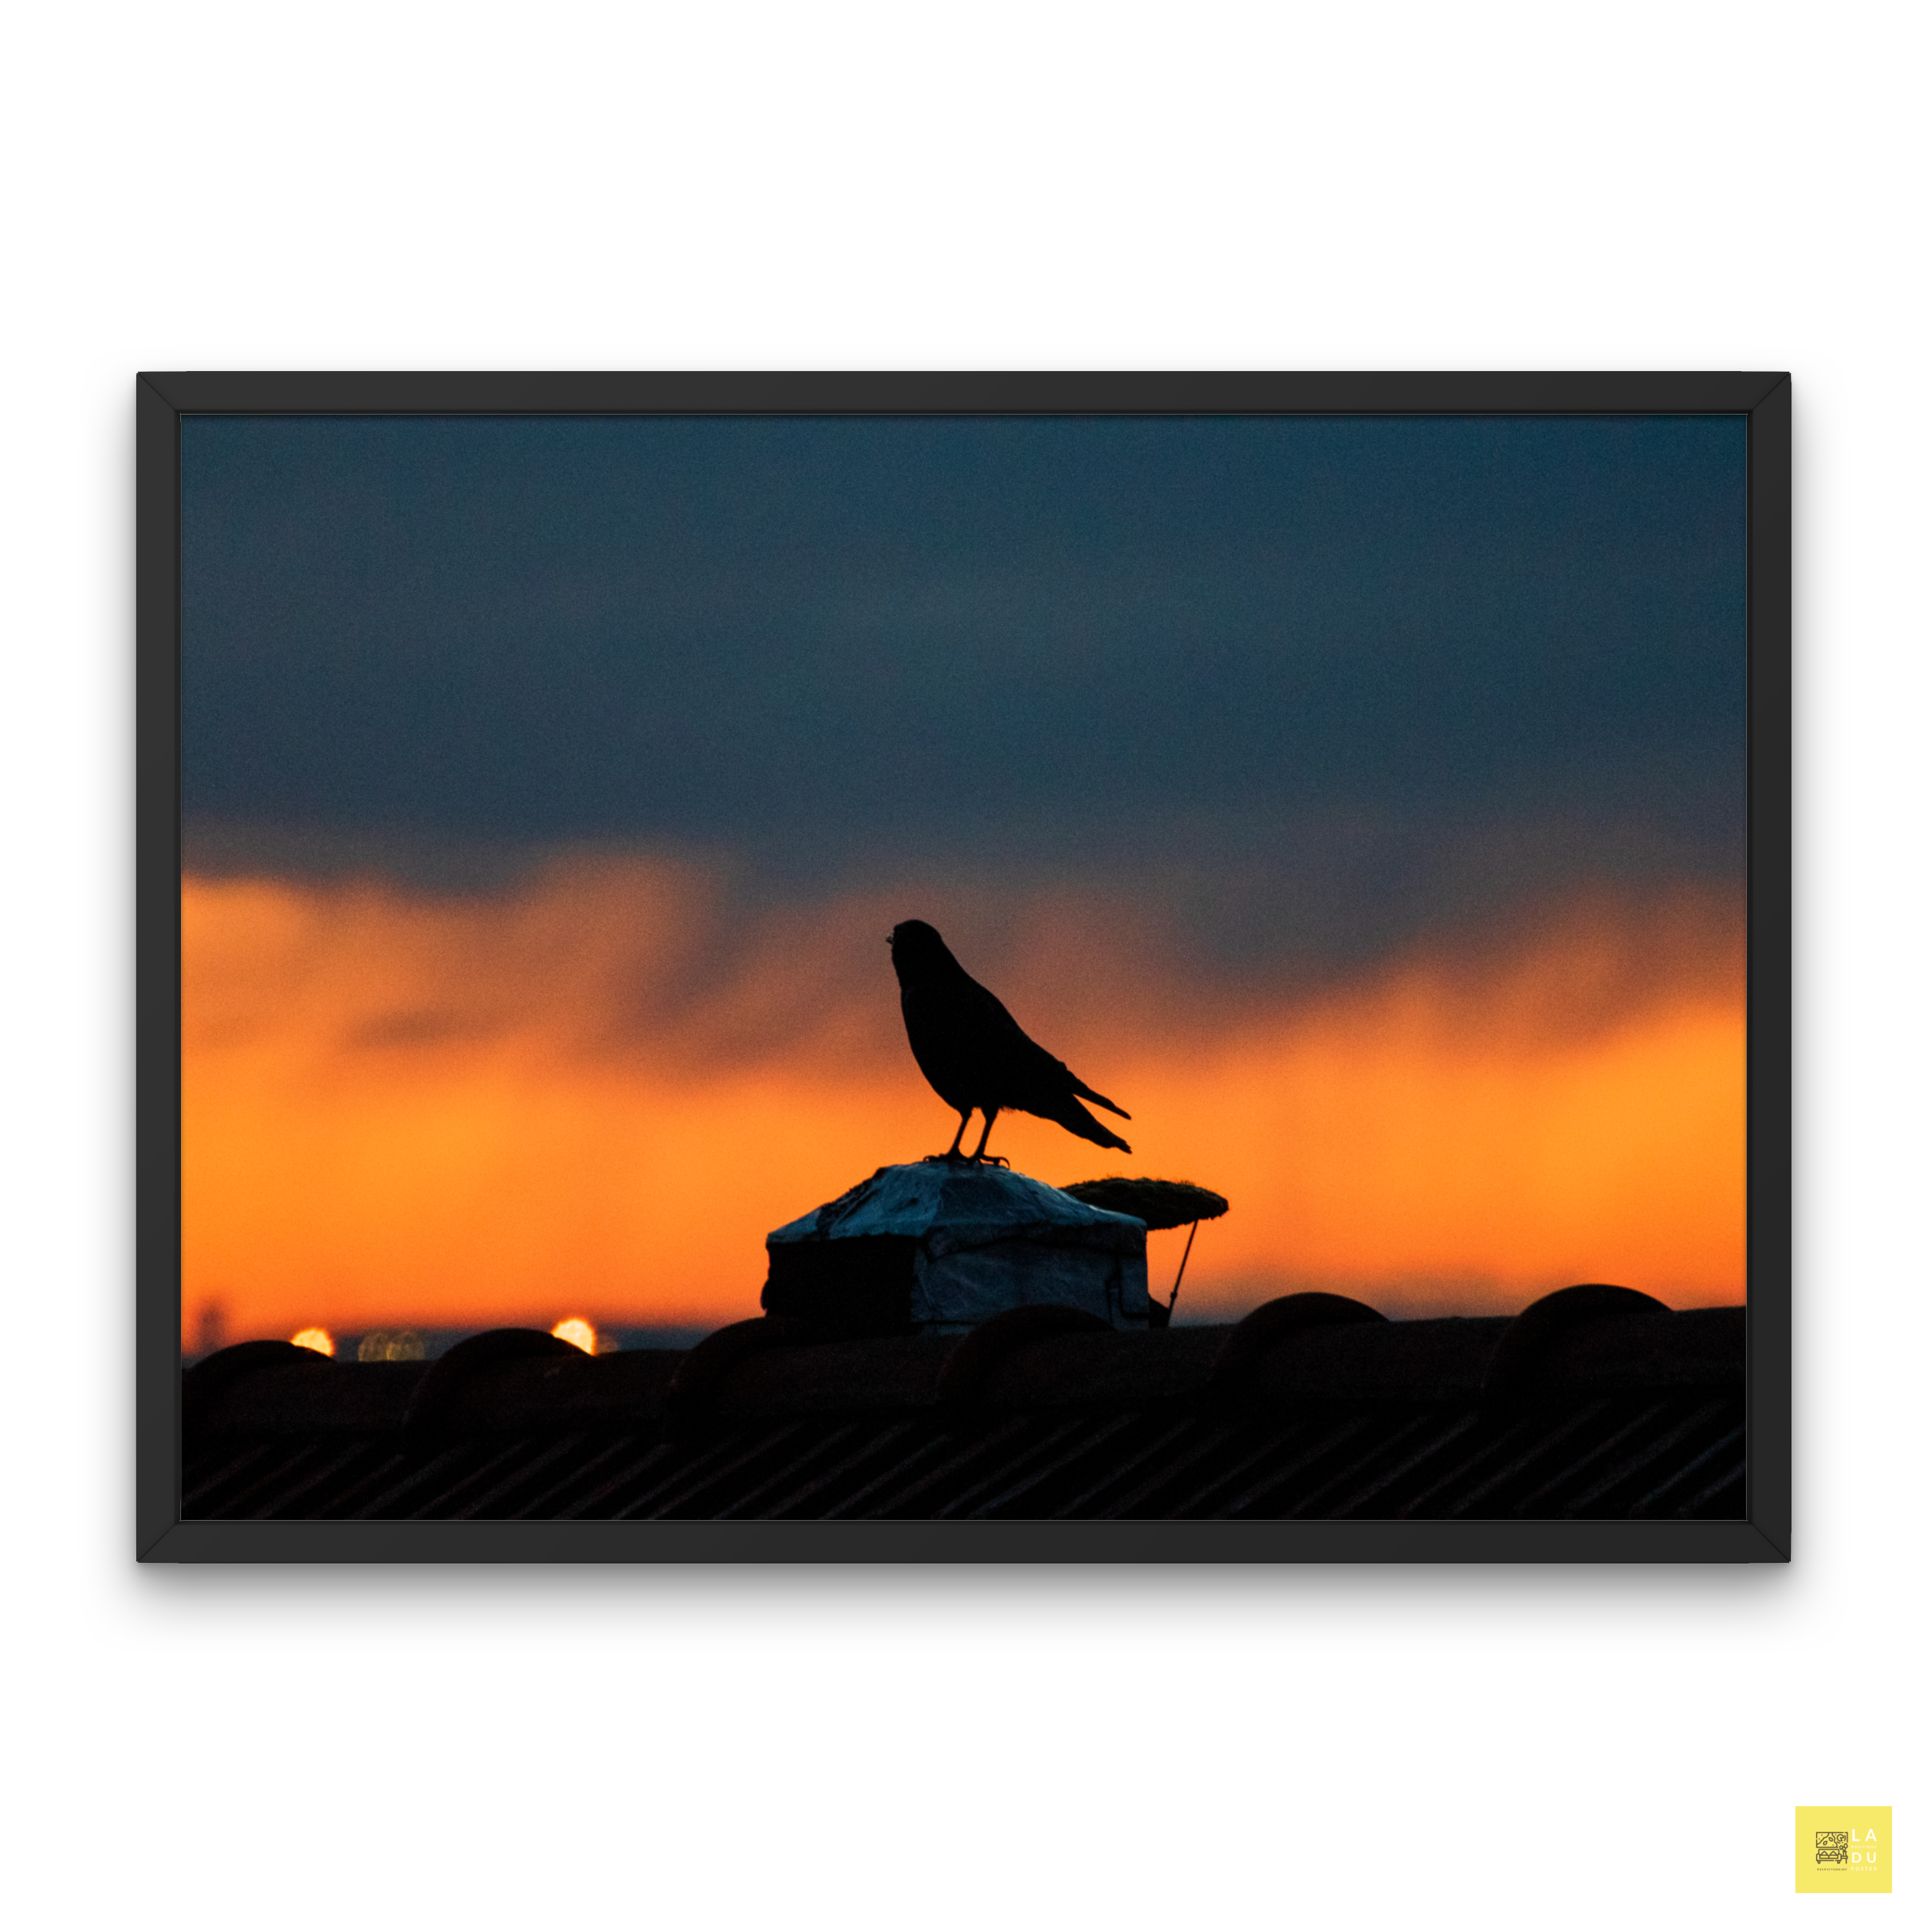 Le corbeau au coucher du soleil - Poster encadré Tirage limité - La boutique du poster Français